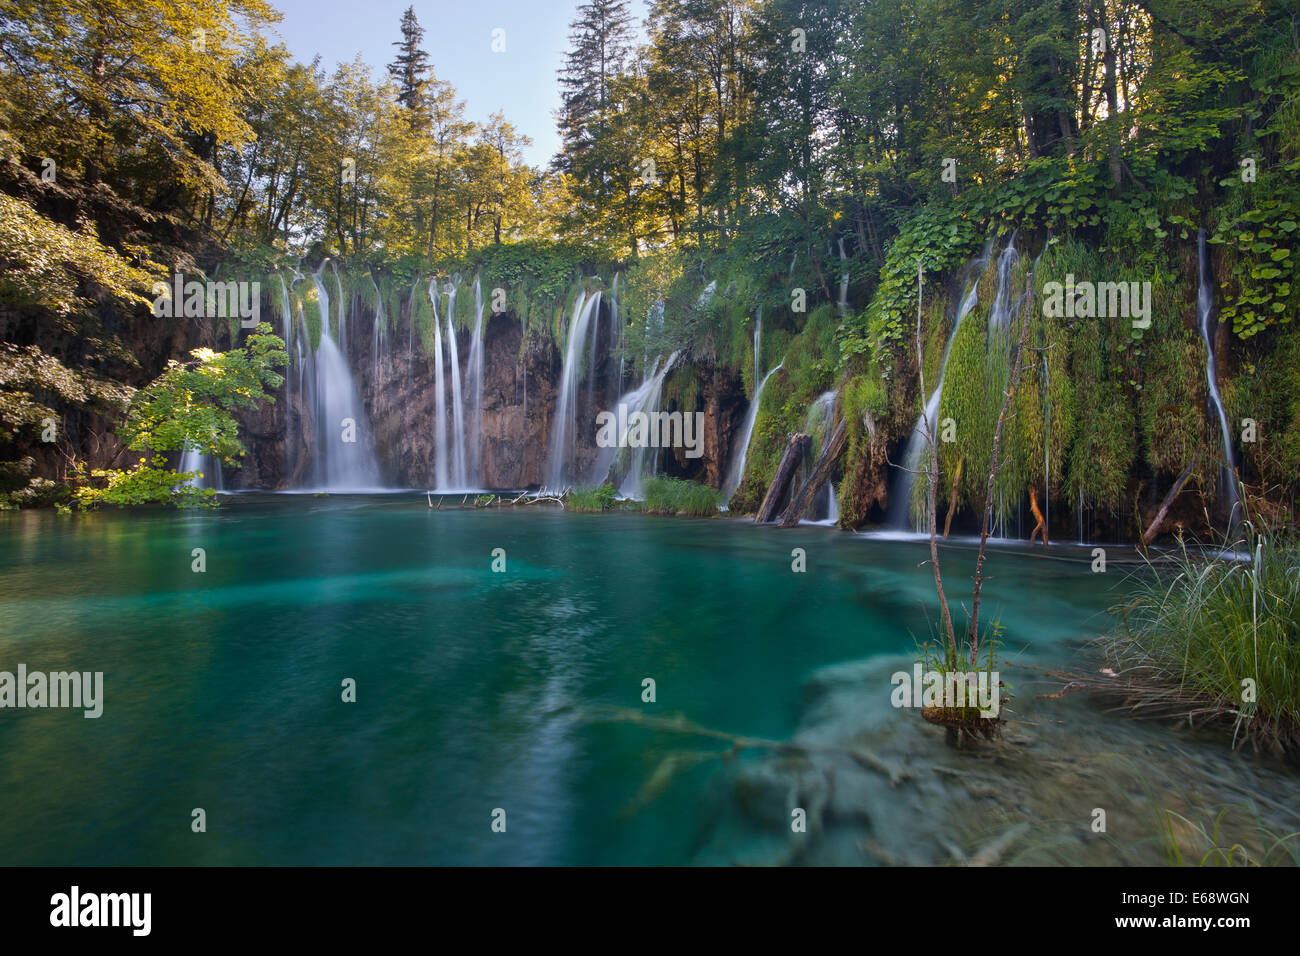 Pevalek's waterfalls in National Park Plitvice Lakes, Croatia Stock Photo